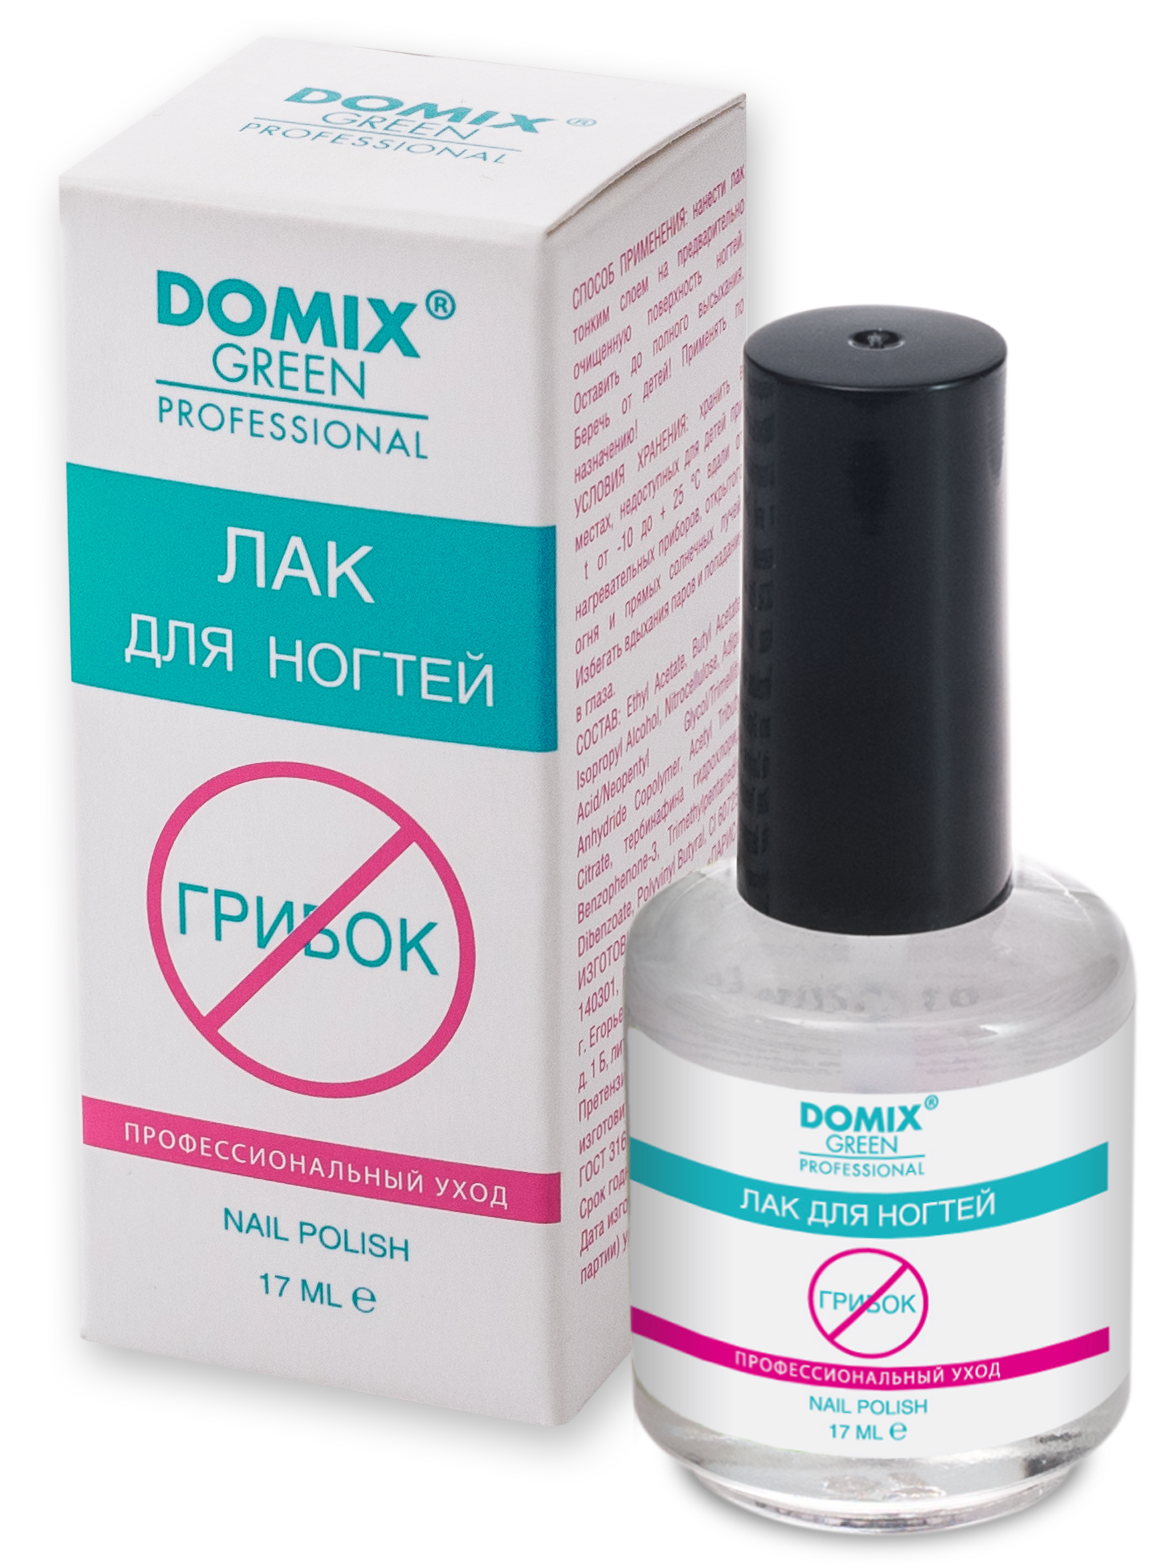 Средство для ногтей Domix Green от грибка. Лак для ногтей стоп грибок Domix. Domix лак для ногтей от грибка ногтей. Домикс Грин лак для ногтей. Грибок ногтя эффективные препараты отзывы